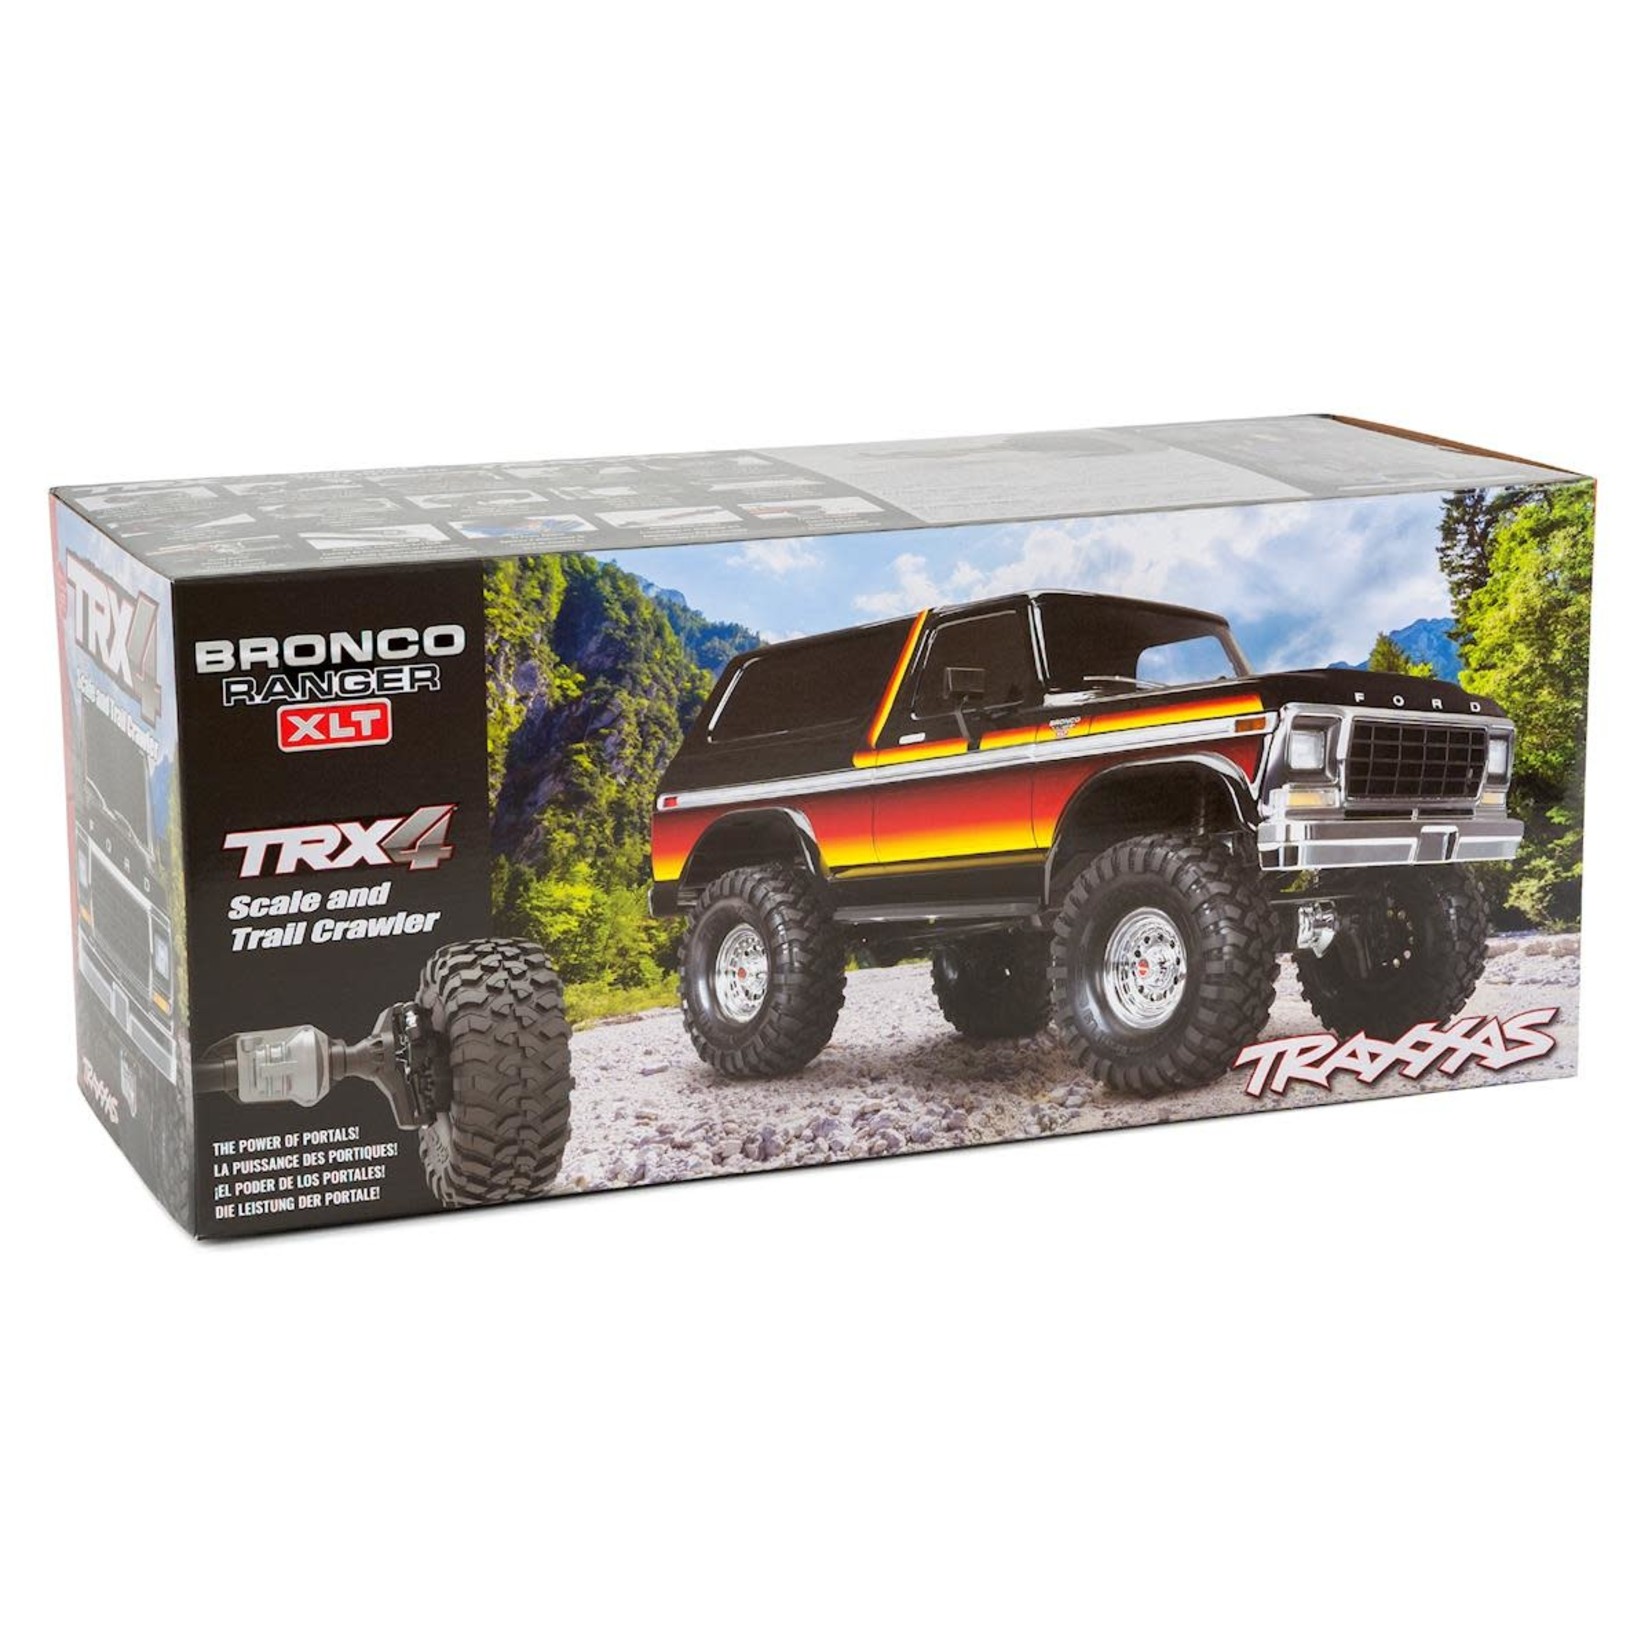 Traxxas Traxxas TRX-4 Crawler 79' Bronco Body 4WD Electric Trail Truck